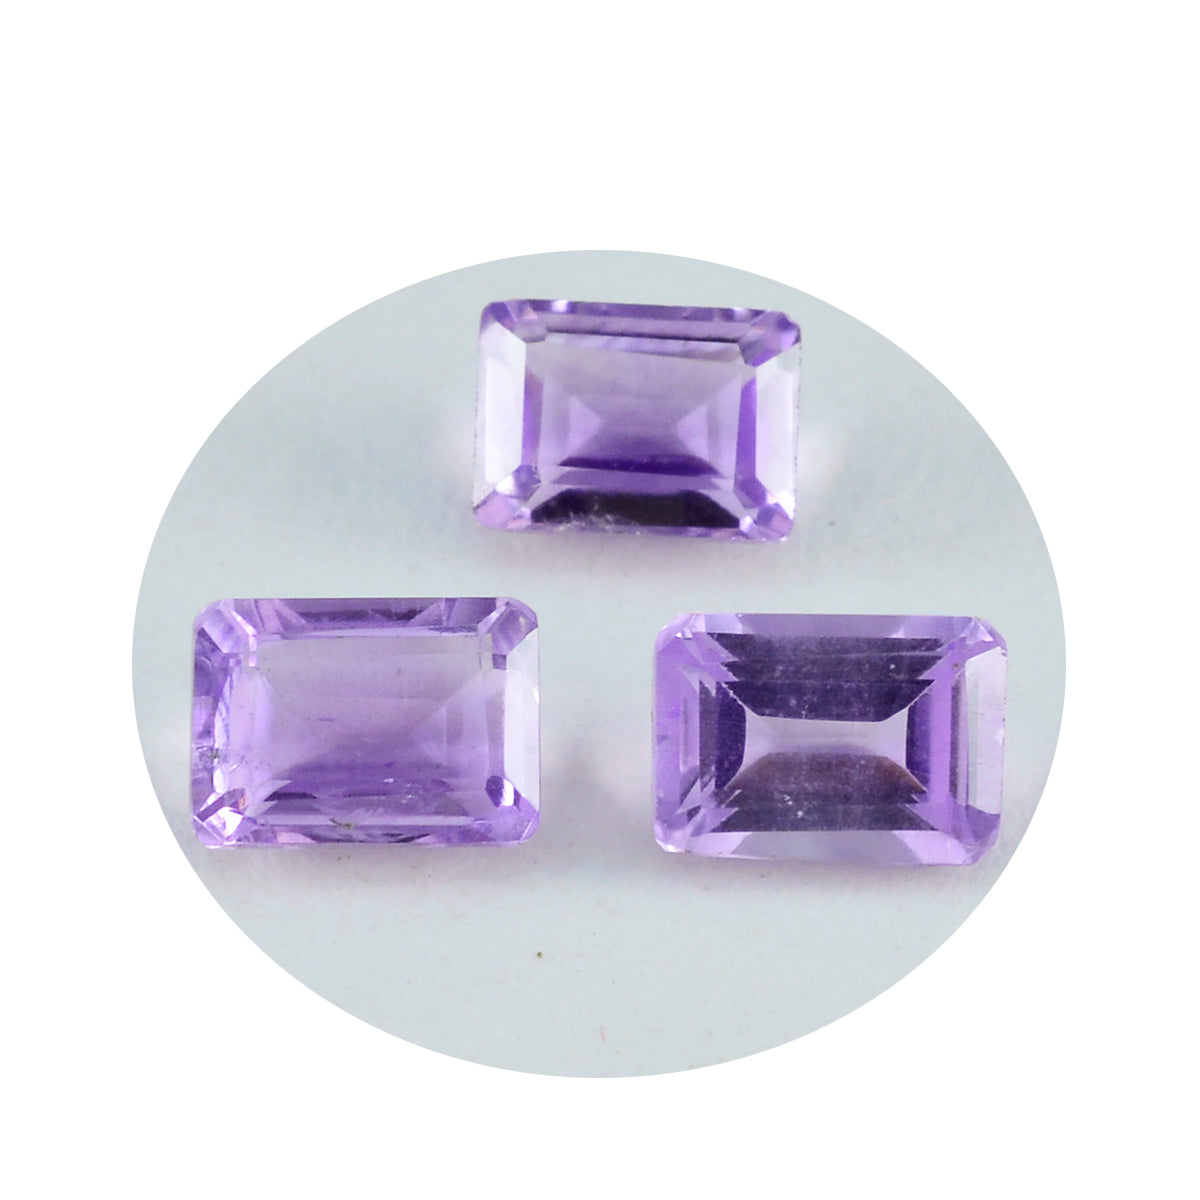 Riyogems 1PC Genuine Purple Amethyst Faceted 9X11 mm Octagon Shape A1 Quality Loose Gem